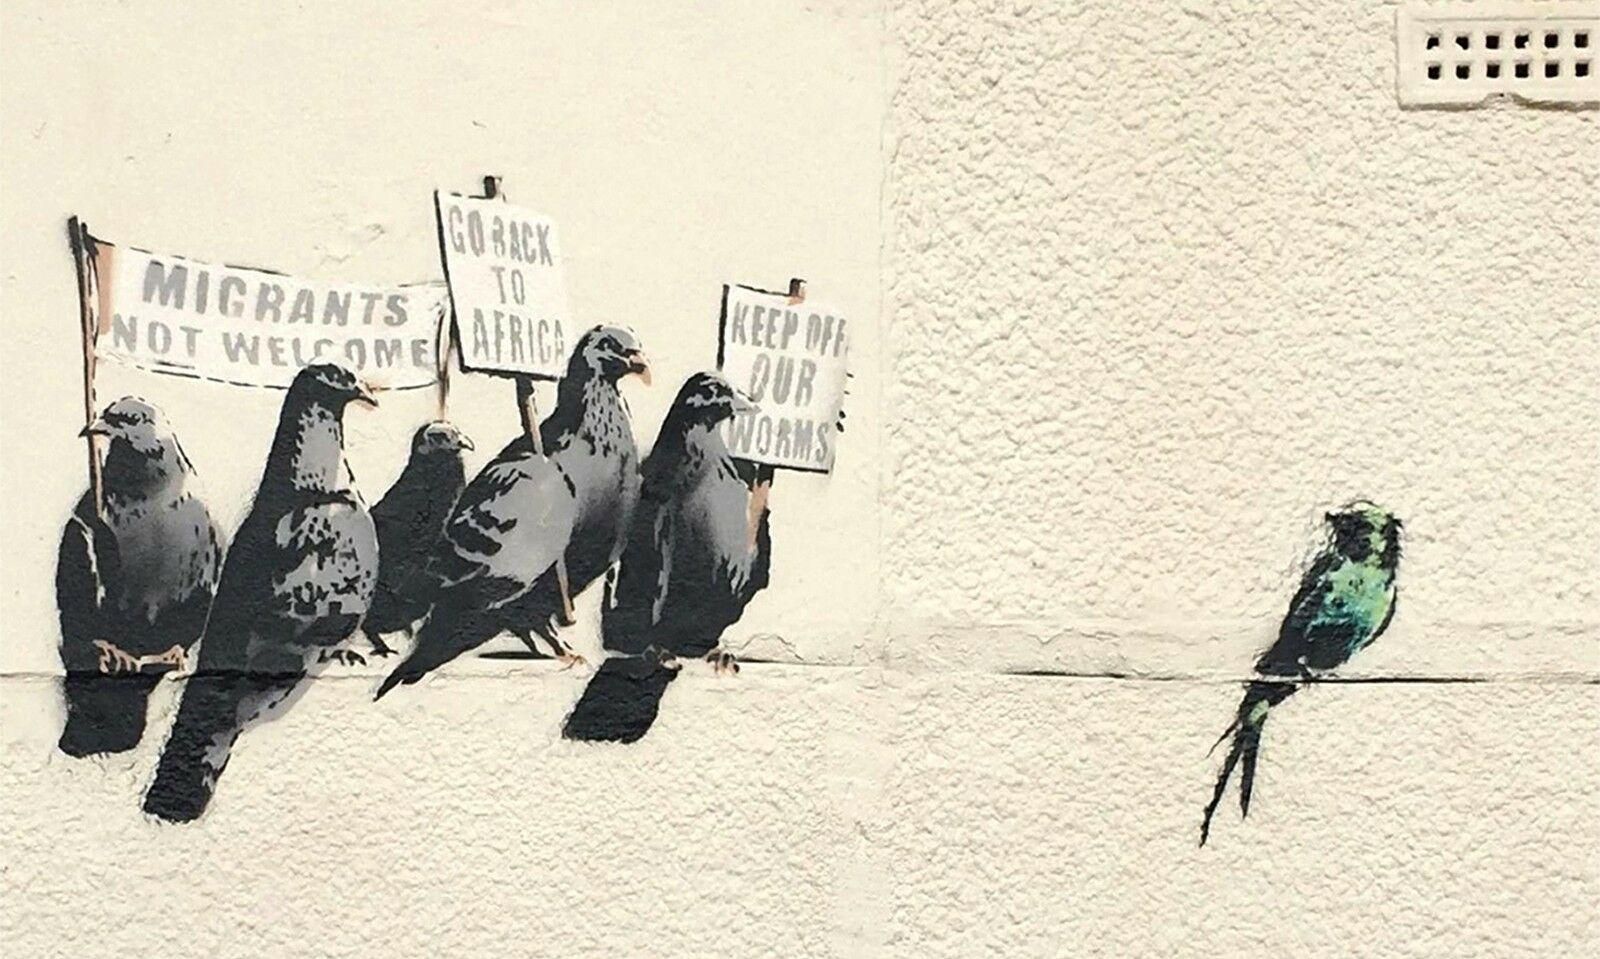 Banksy Rue Graffiti Pigeons Art Urbain Home Décor Peint À La Main Hd  Imprimer Peinture À Lhuile Sur Toile Wall Art Toile Photos 200218 Du 10,53  € | Dhgate Intended For Pigeon Wall Art (View 12 of 15)